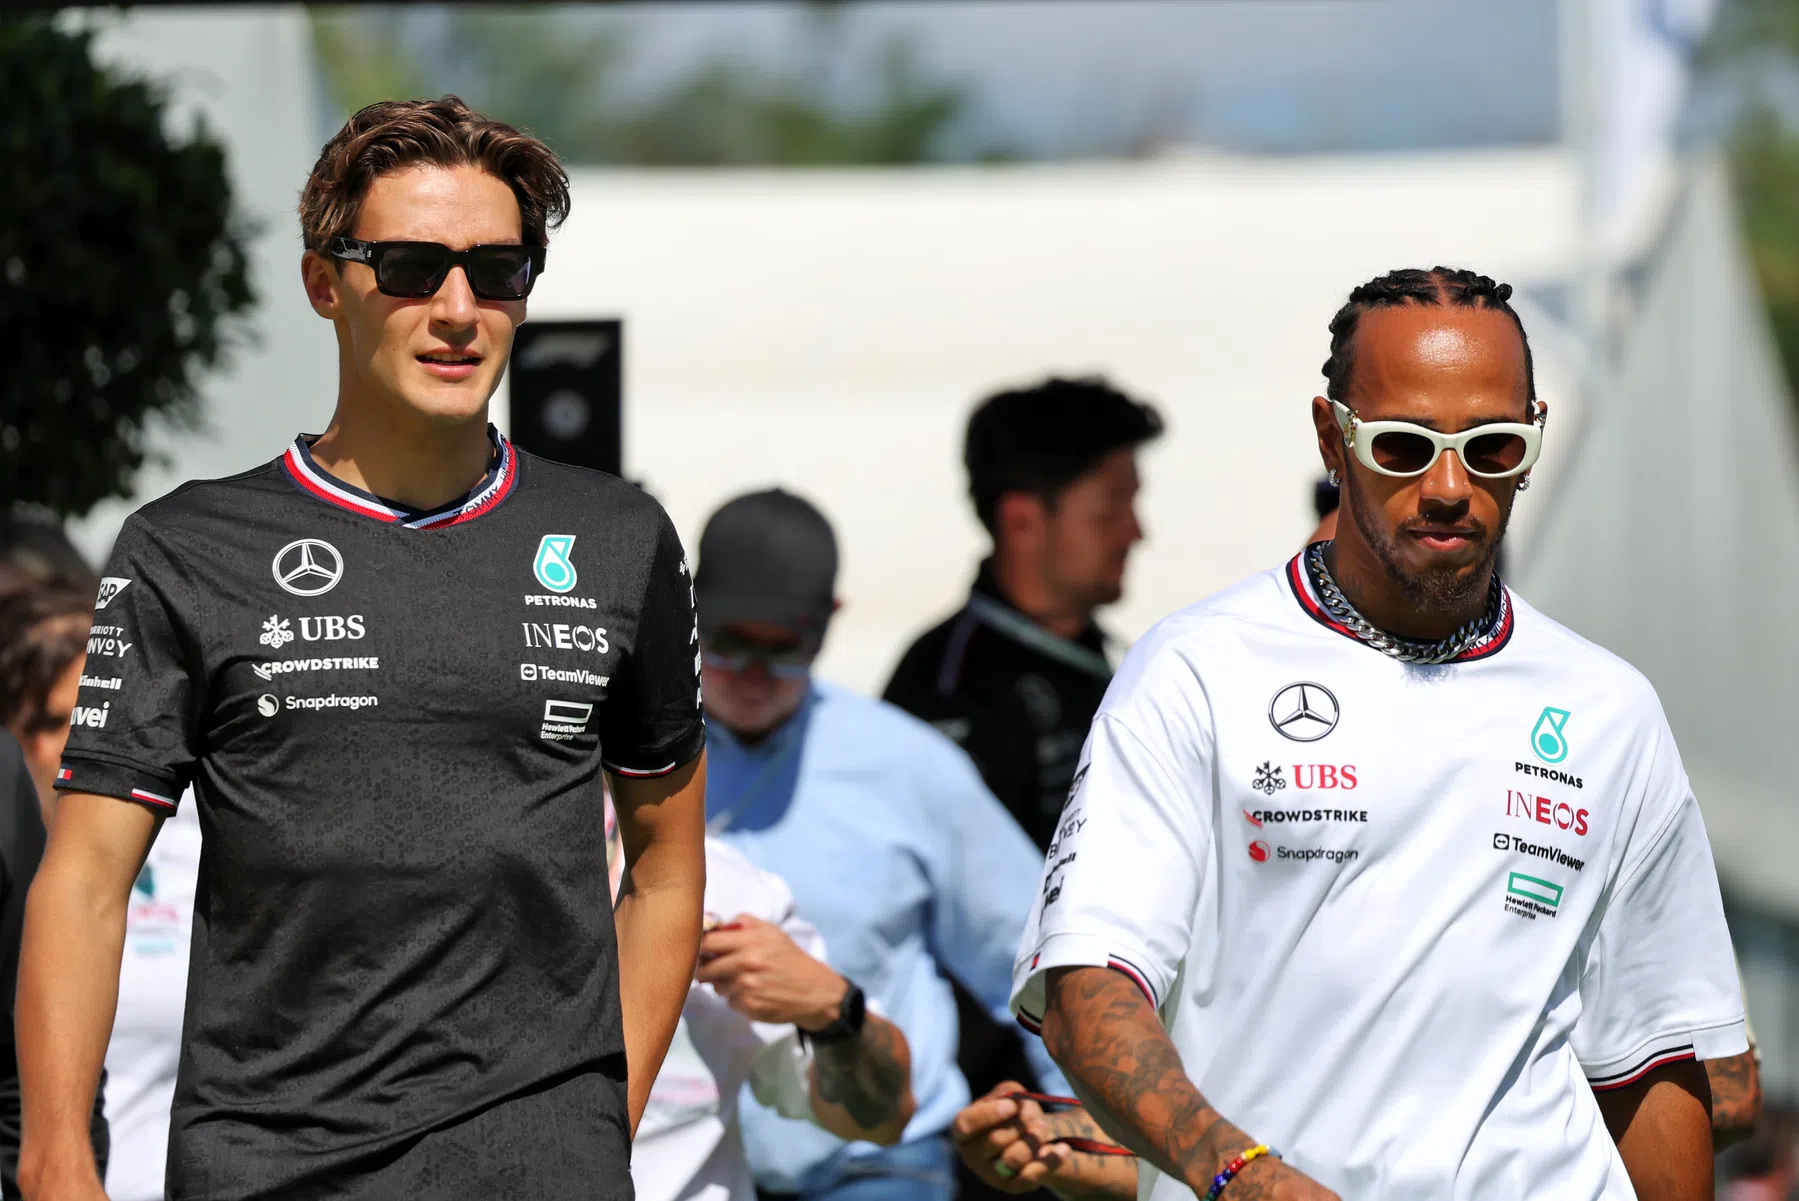 Russell niet blij met Hamilton tijdens kwalificatie GP Spanje 